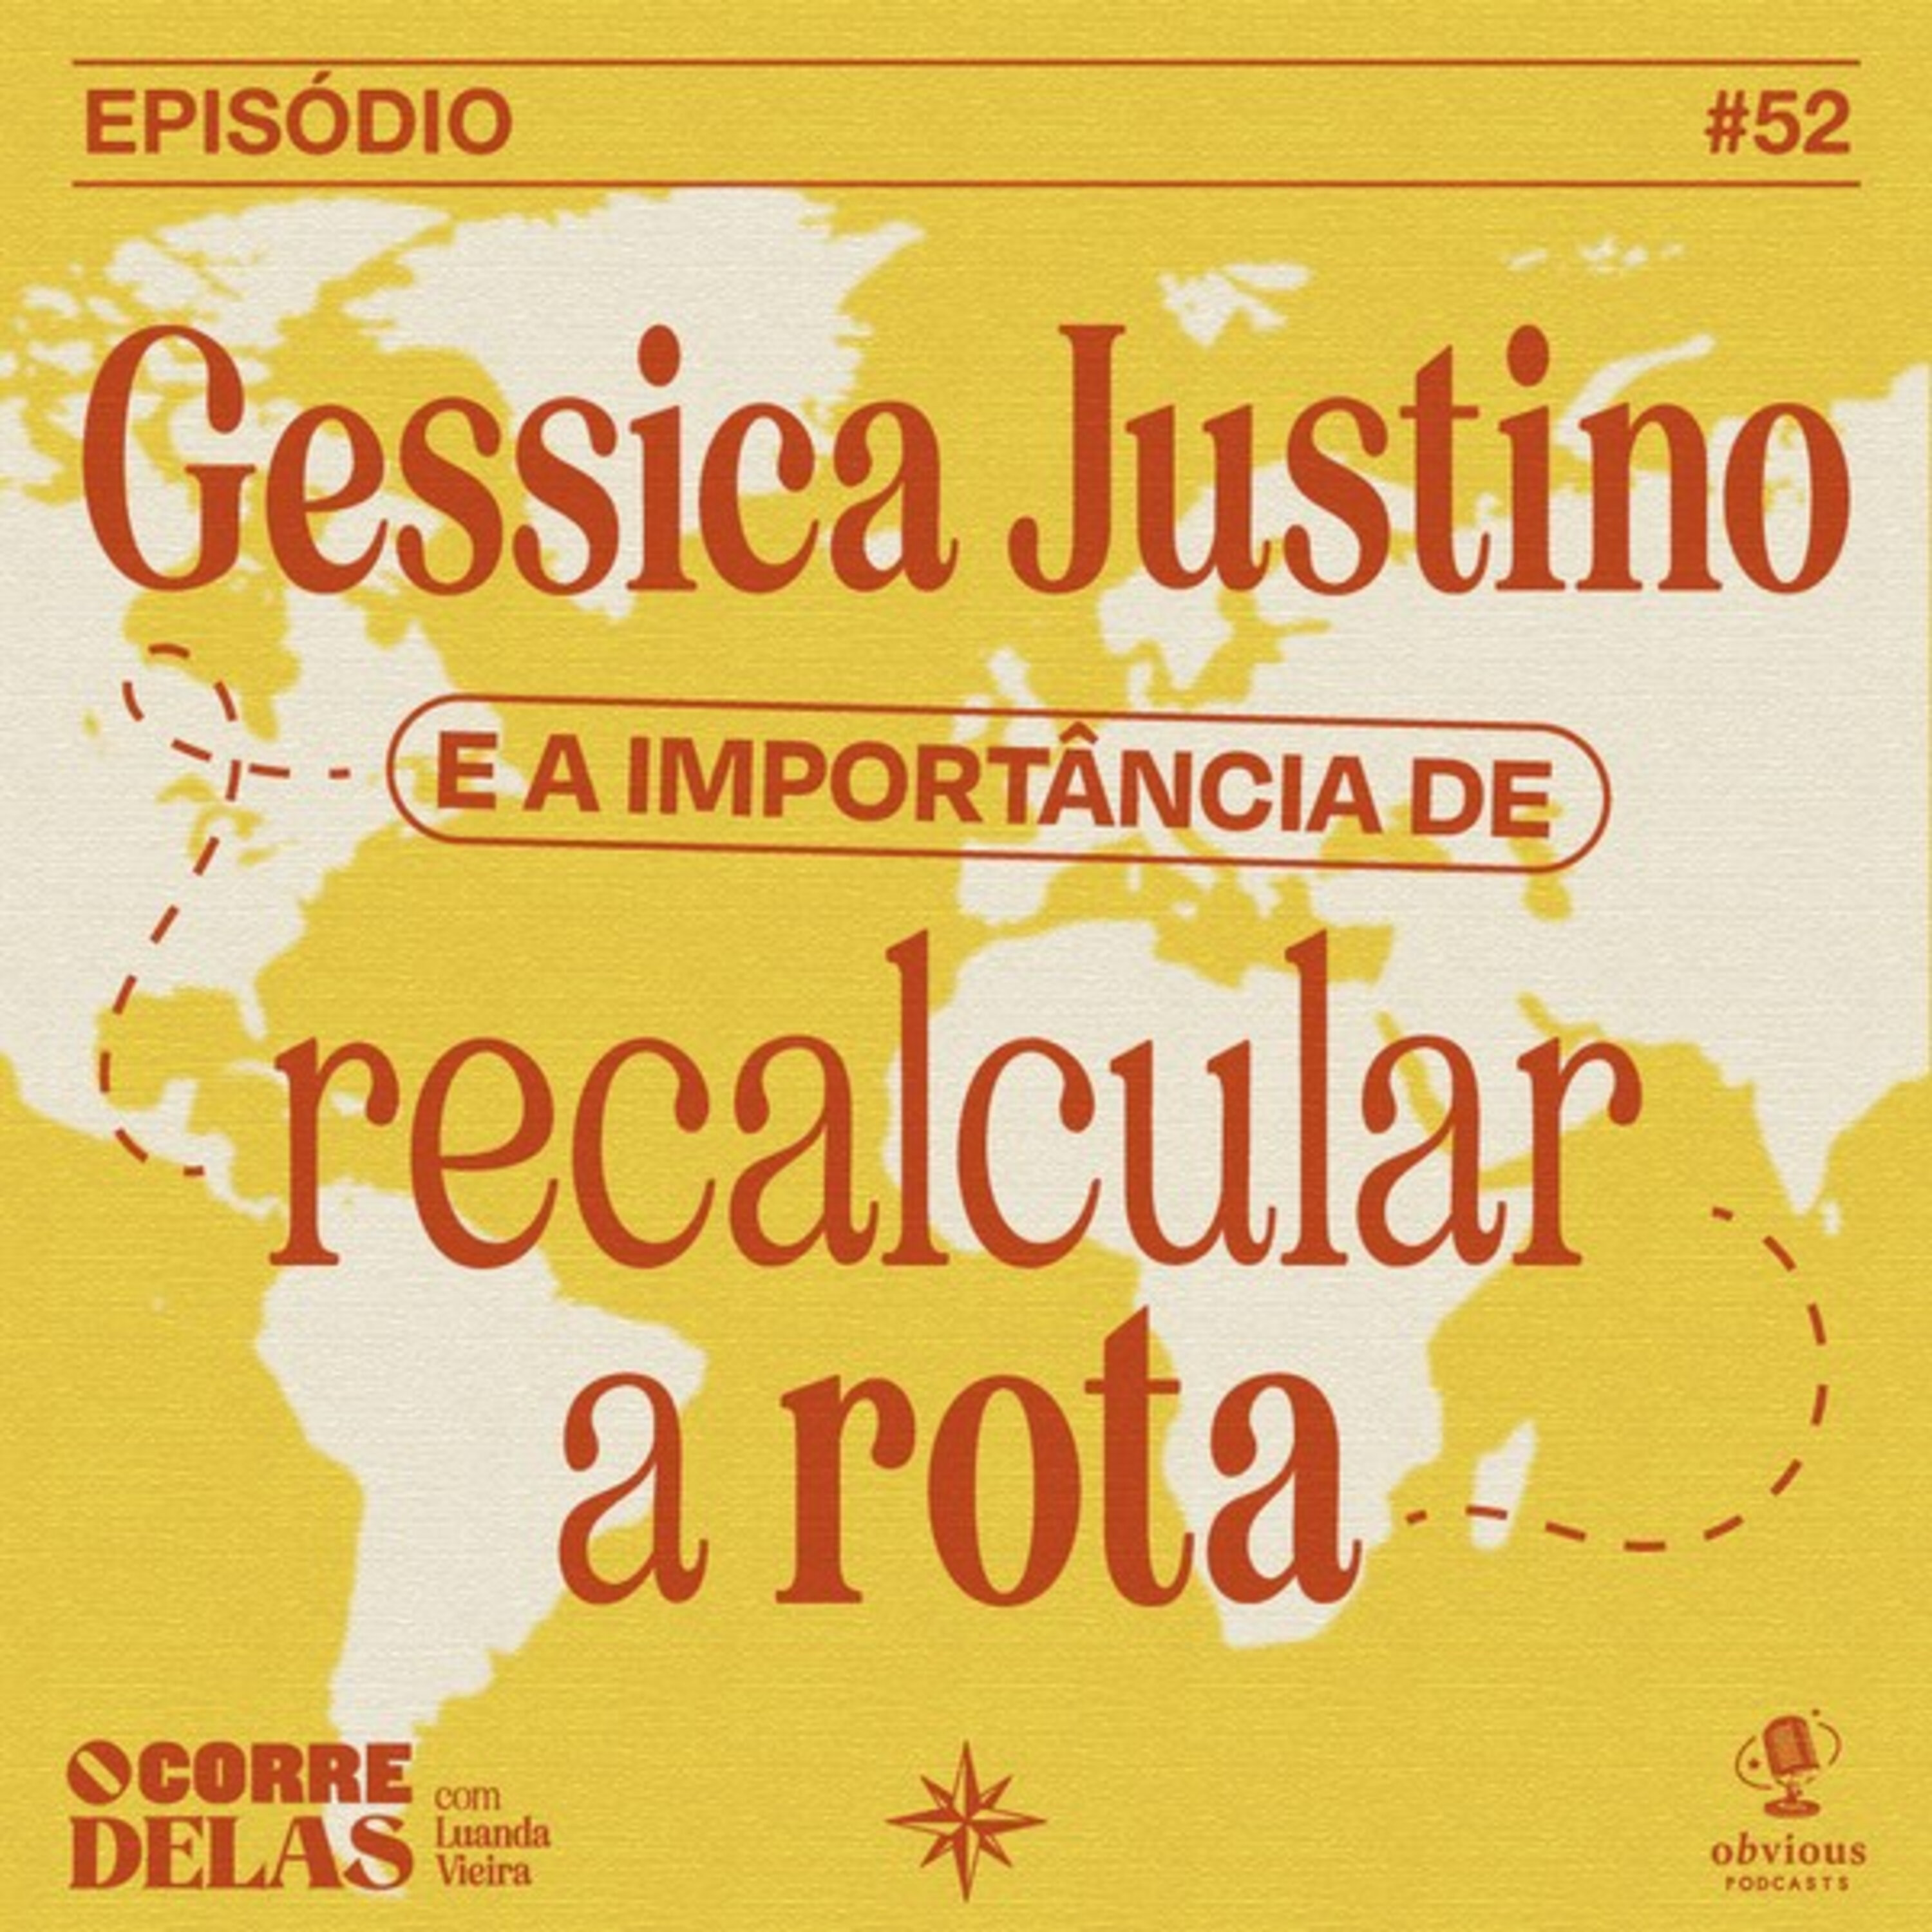 #52 - Gessica Justino e a importância de recalcular a rota